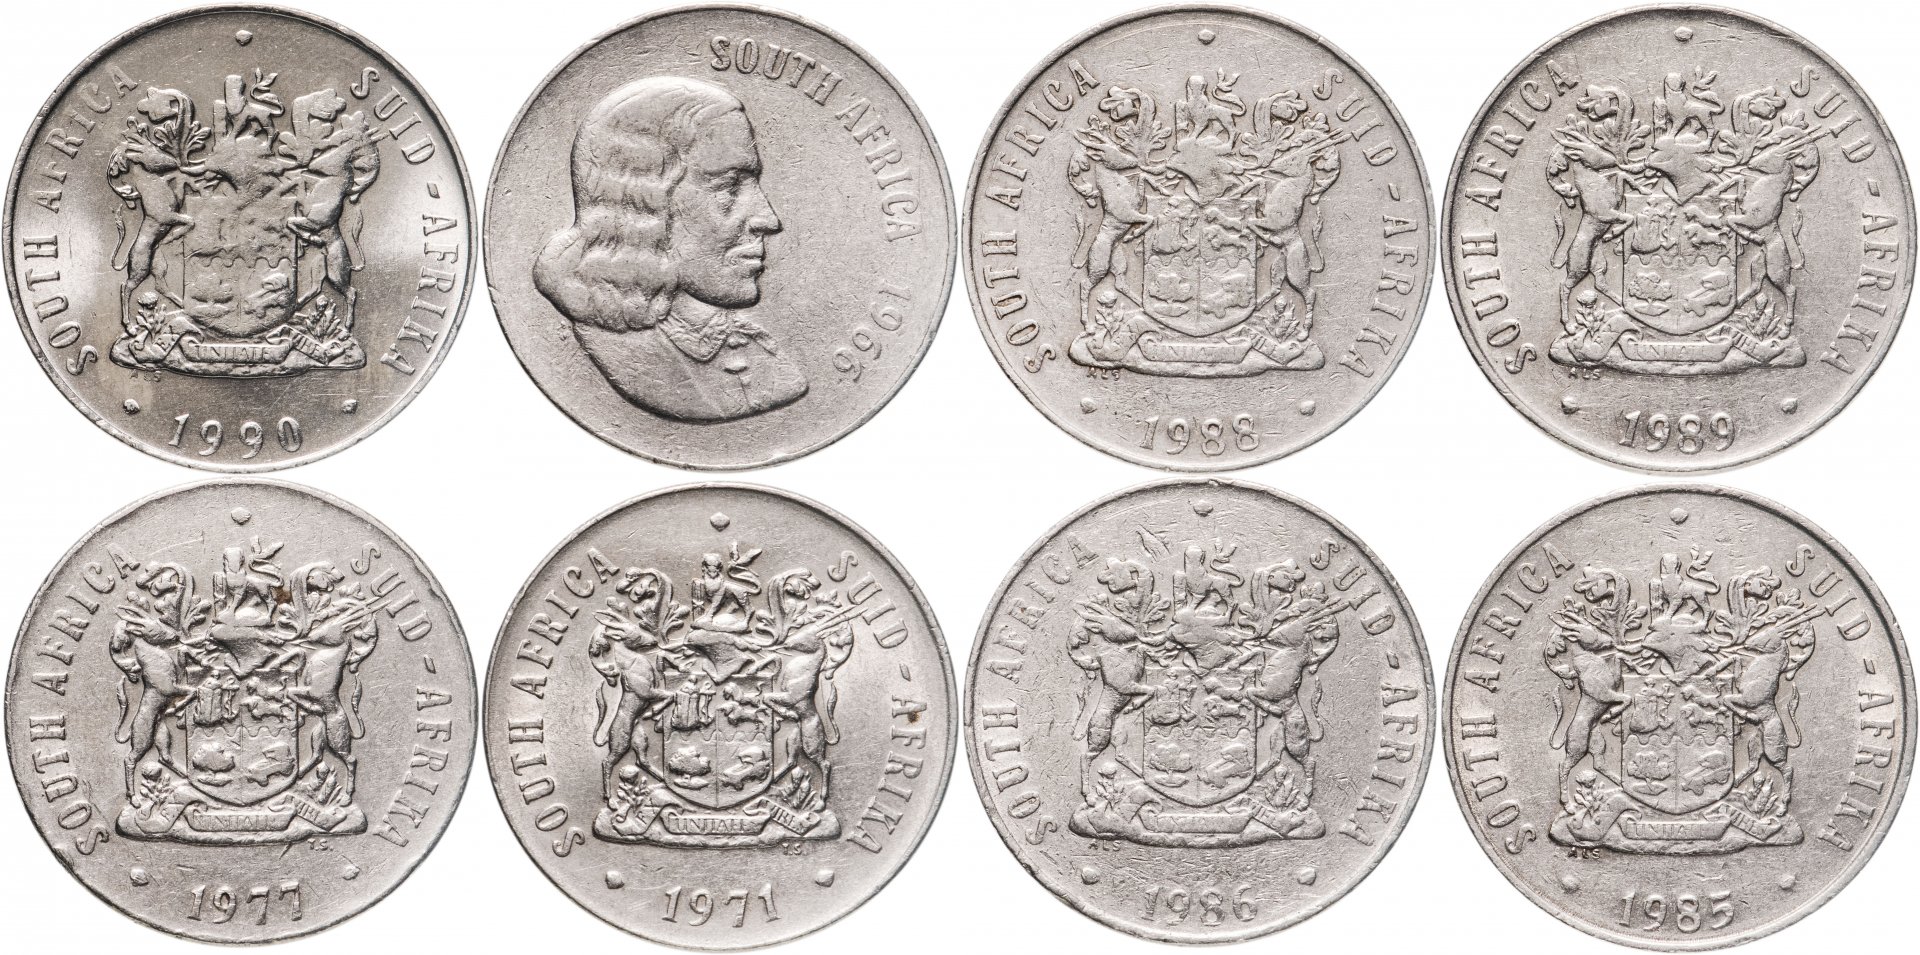 Монета 8 дукатов. Российская Империя монеты 1966. Frank c1/2 монета 1966. Подвеска 8 монет 40 см, z178-2. 8 монет в операции